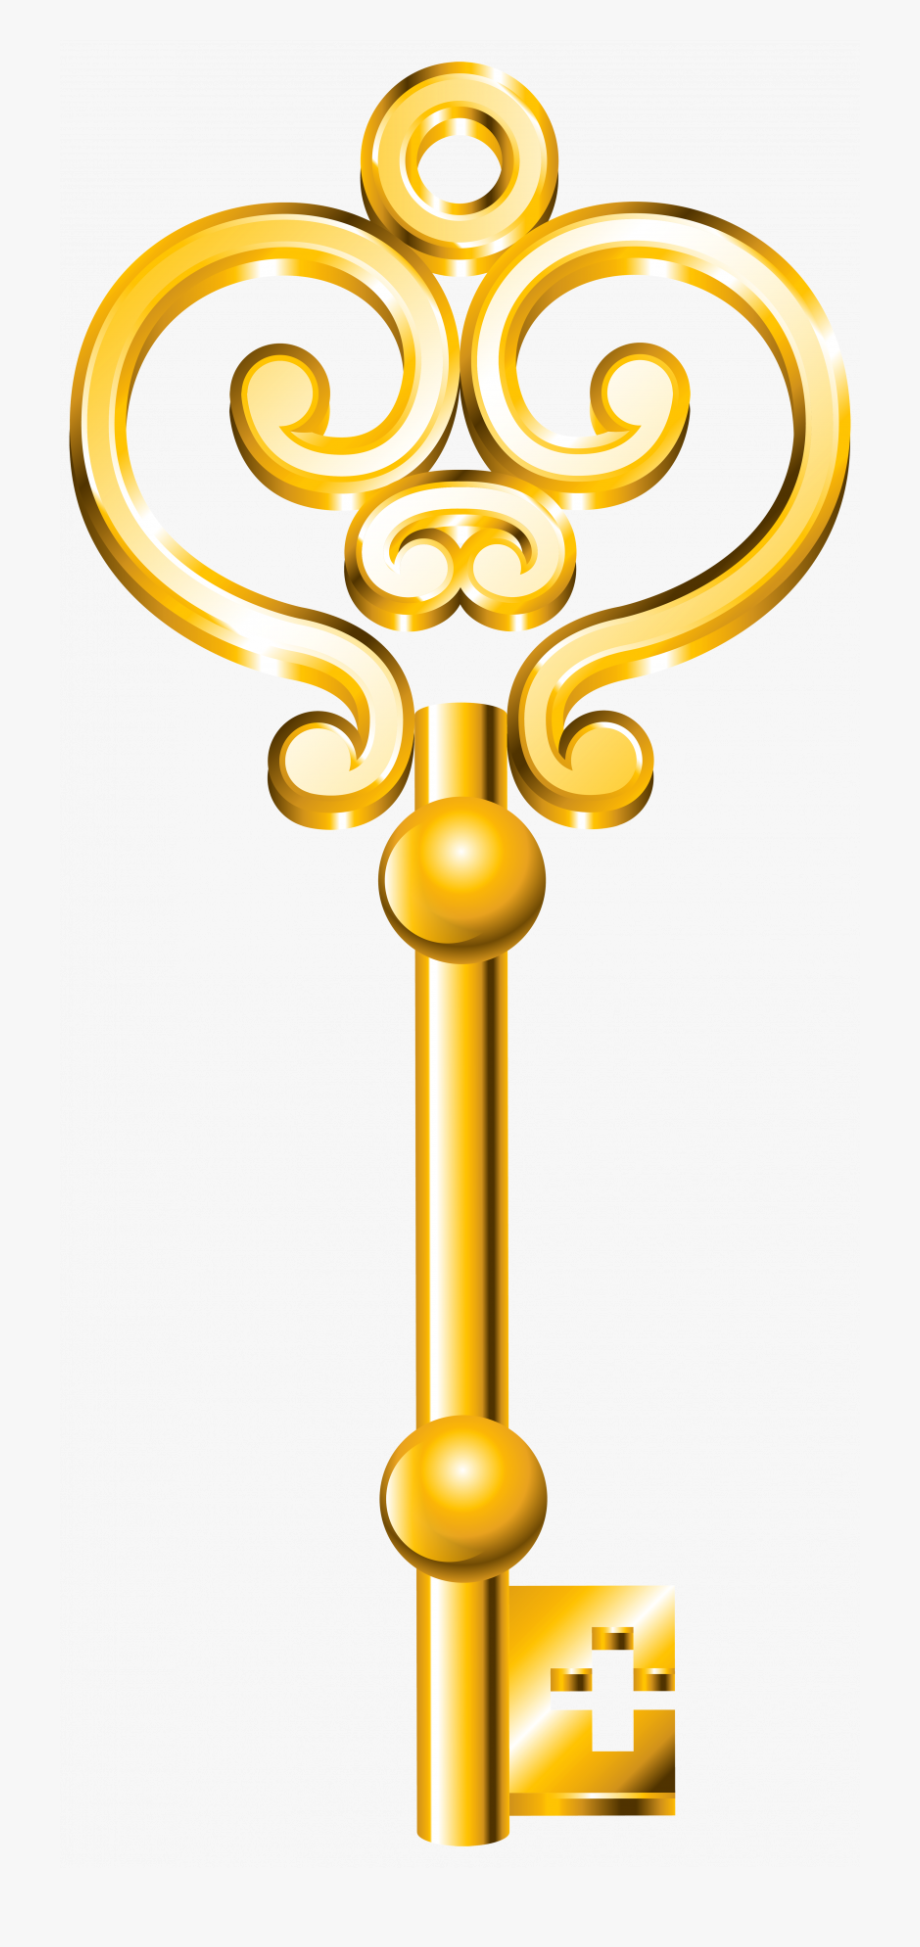 key clipart royal key